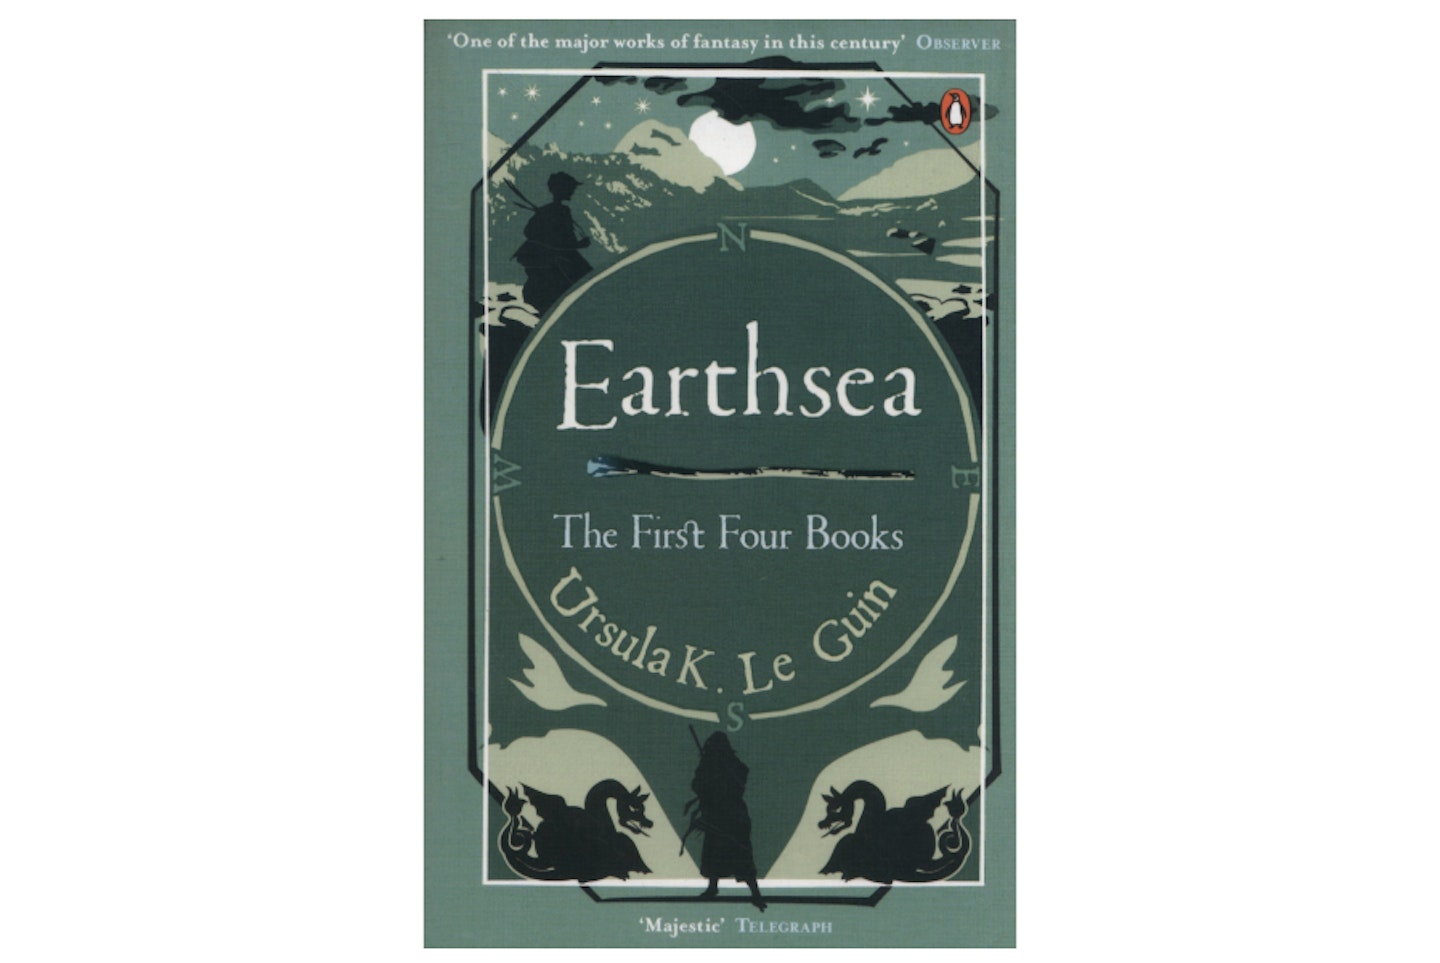 Earthsea by Ursula Le Guin, £7.49